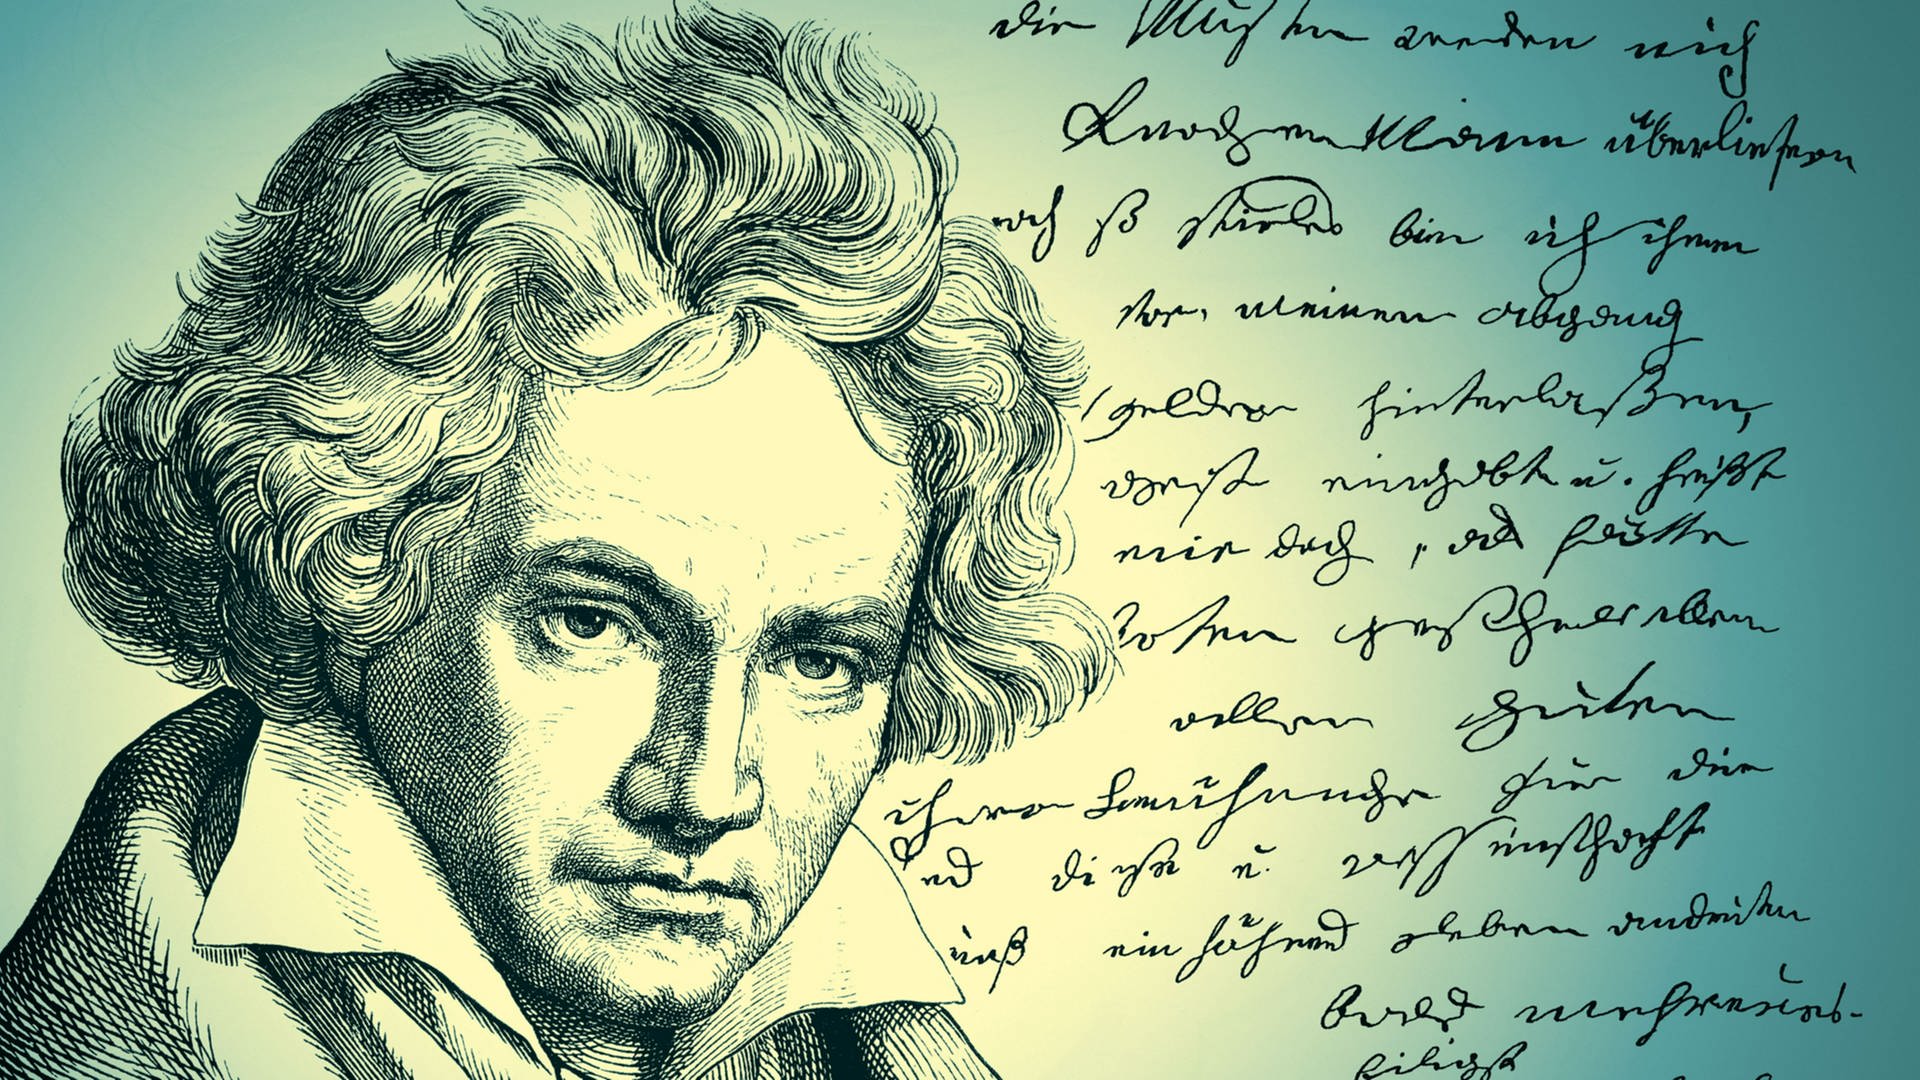 Zeichnung von Beethoven neben einem handschriftlichen Brief von ihm (Foto: picture alliance/Zoonar)